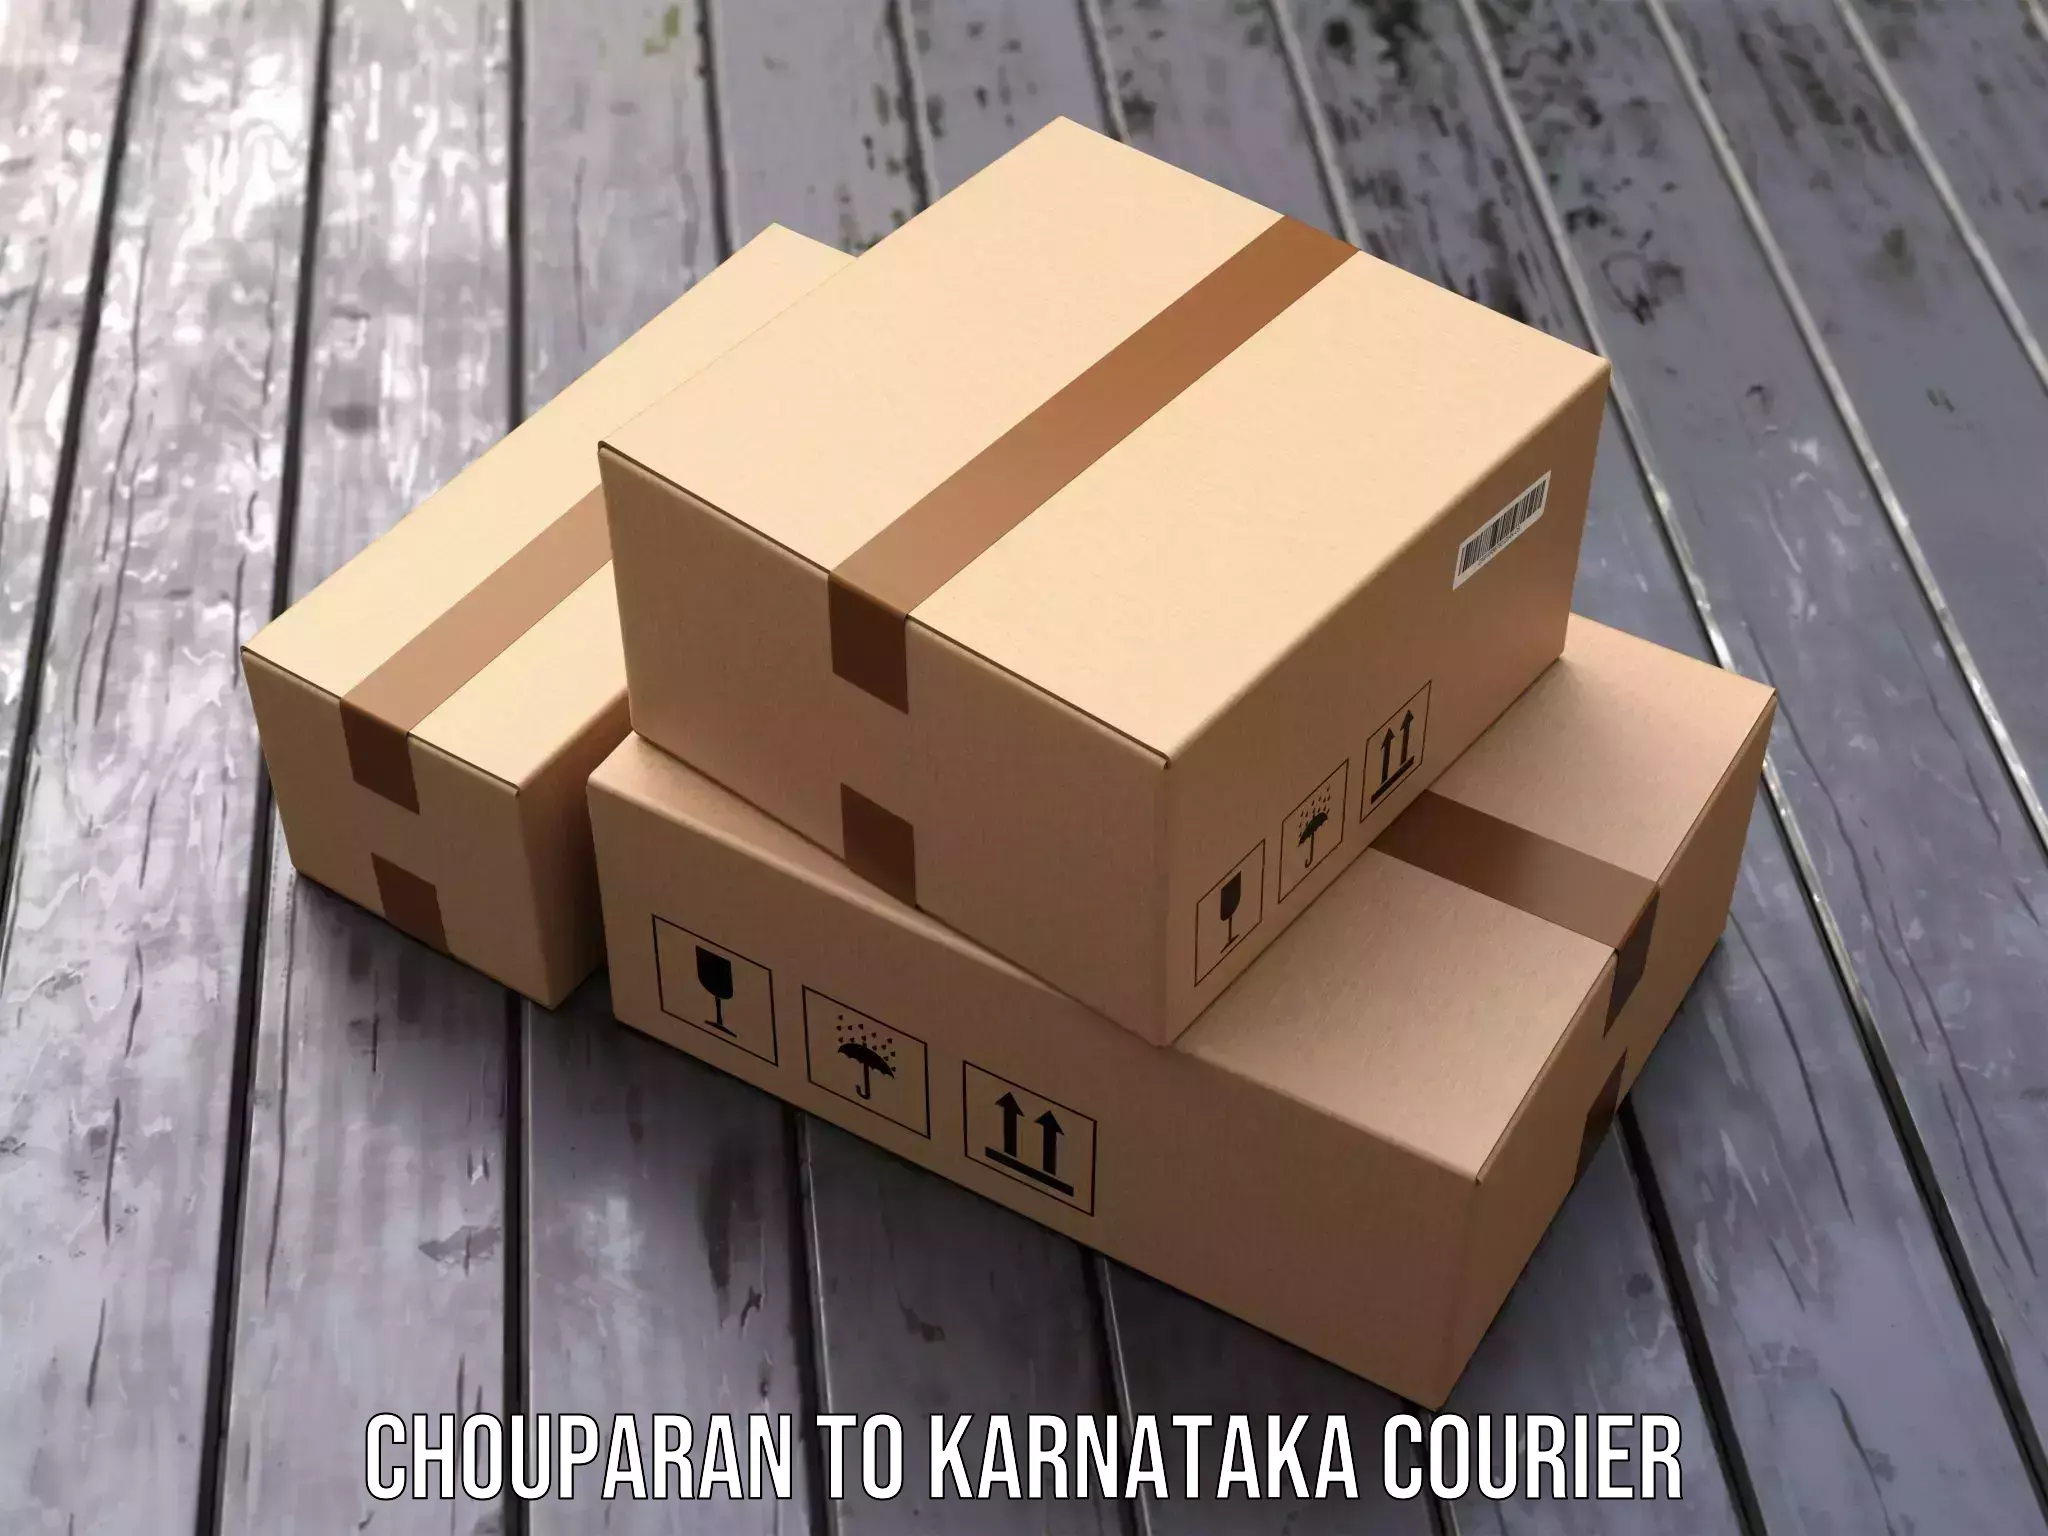 Digital courier platforms Chouparan to Karnataka